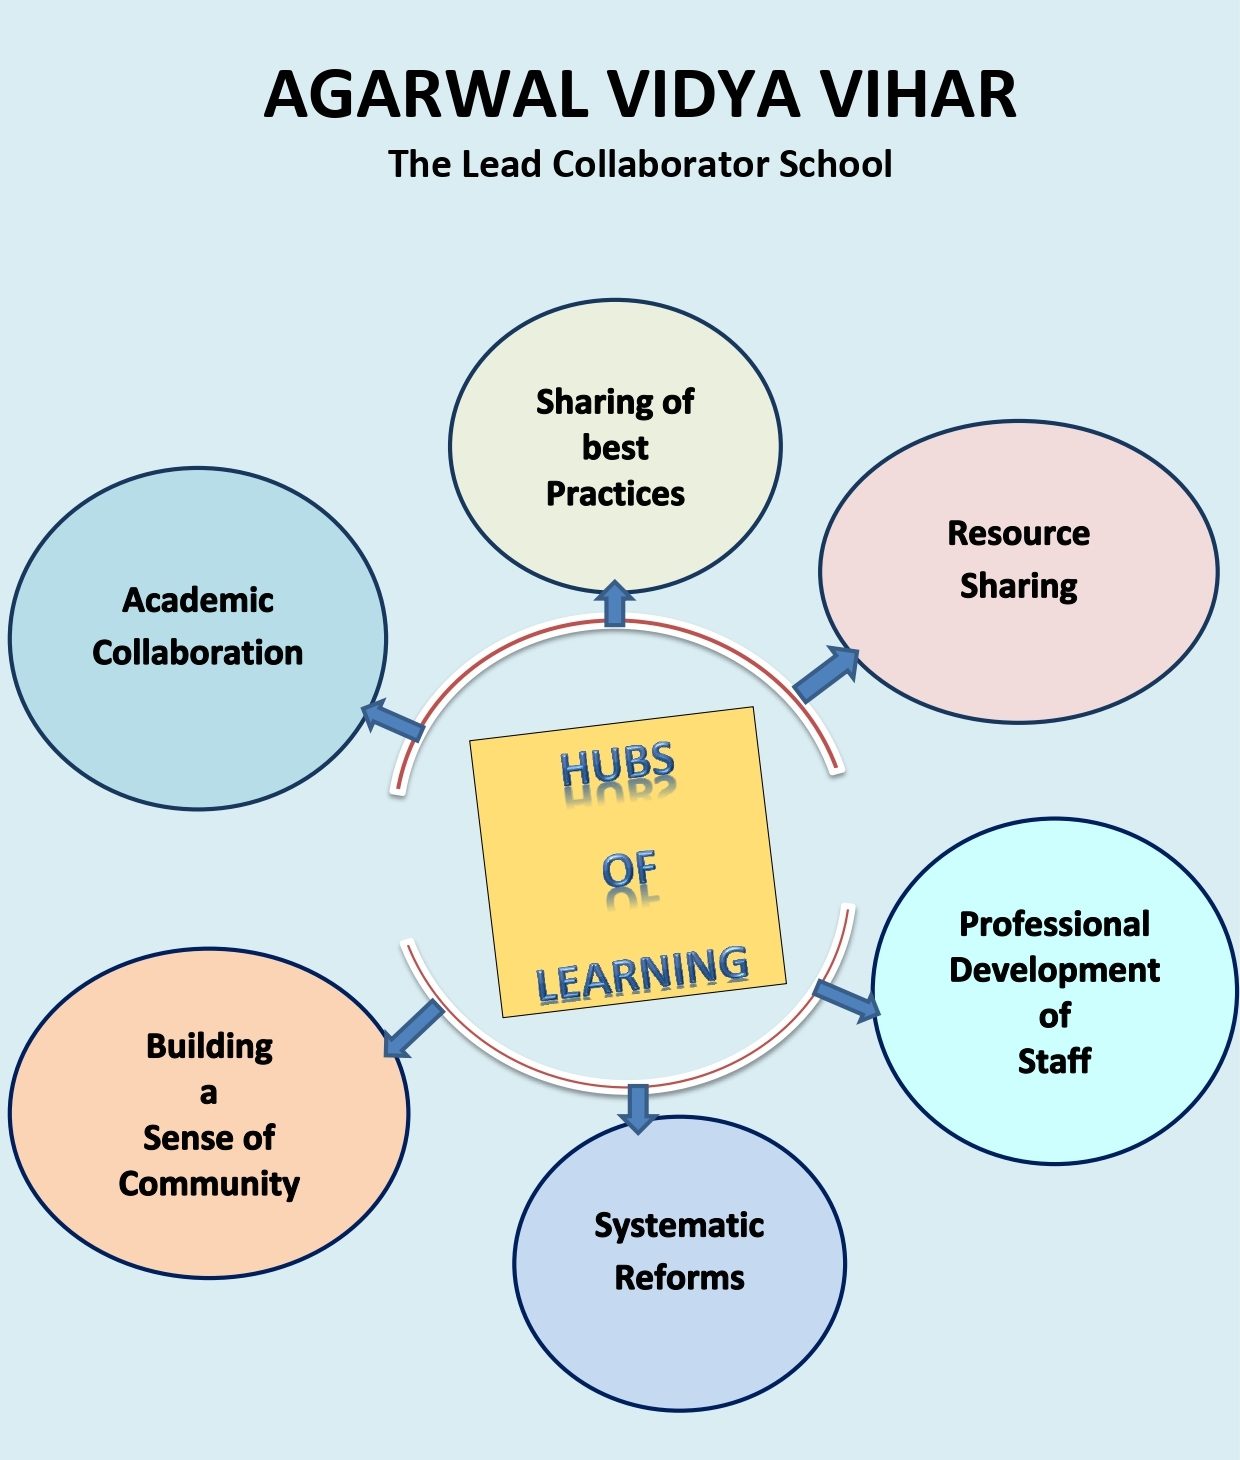 The Lead Collaborator School